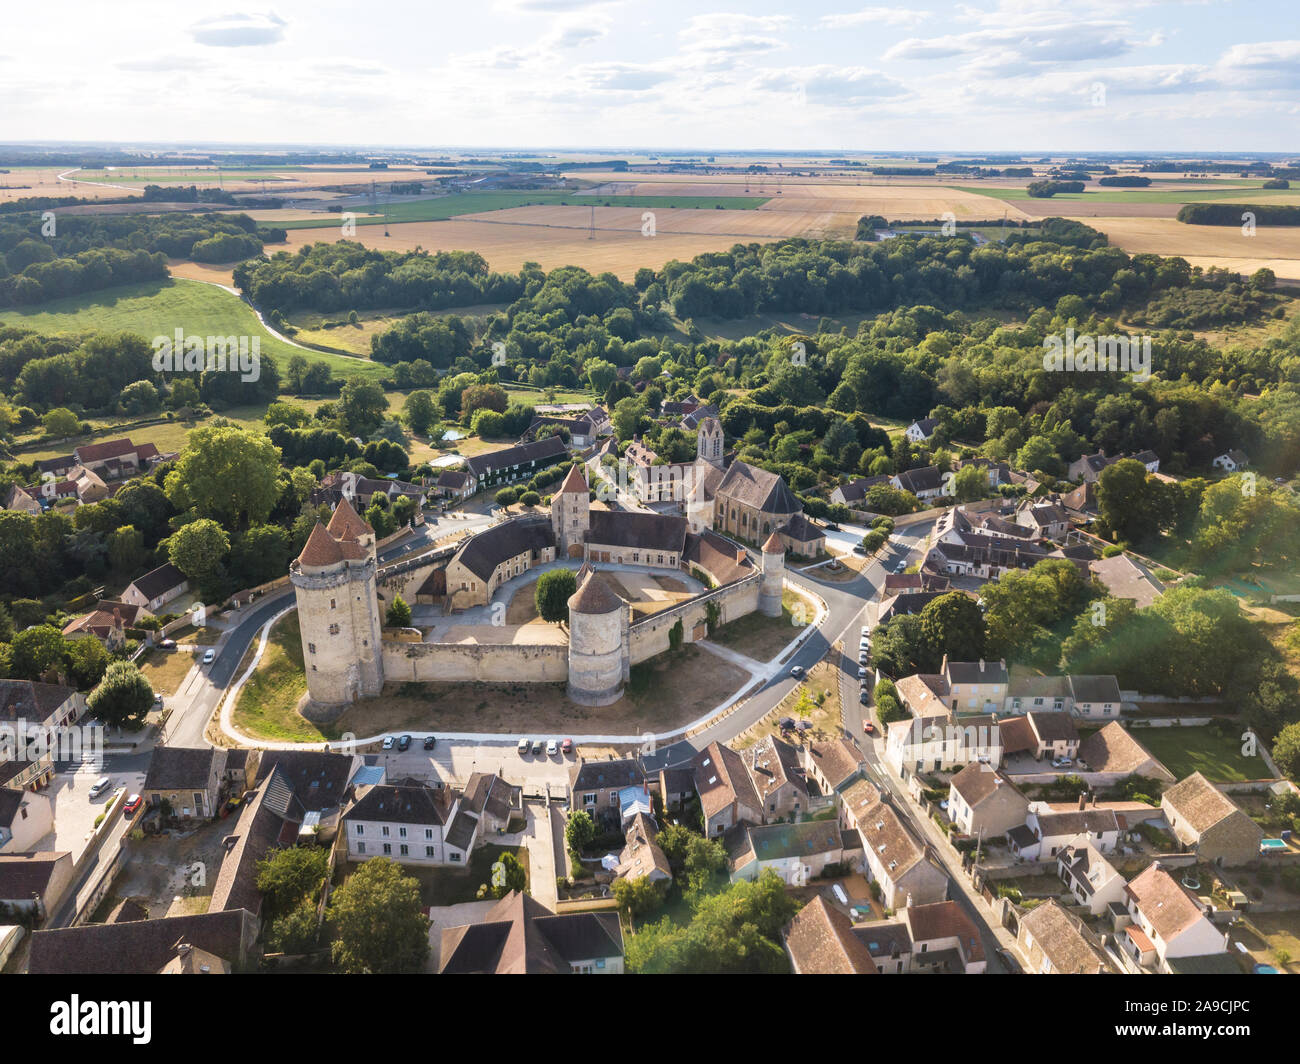 Castello medievale con le mura fortificate e torri e mastio nel villaggio rurale in Francia, vista aerea da fuco di rinnovata fortezza dal medio evo, scen Foto Stock